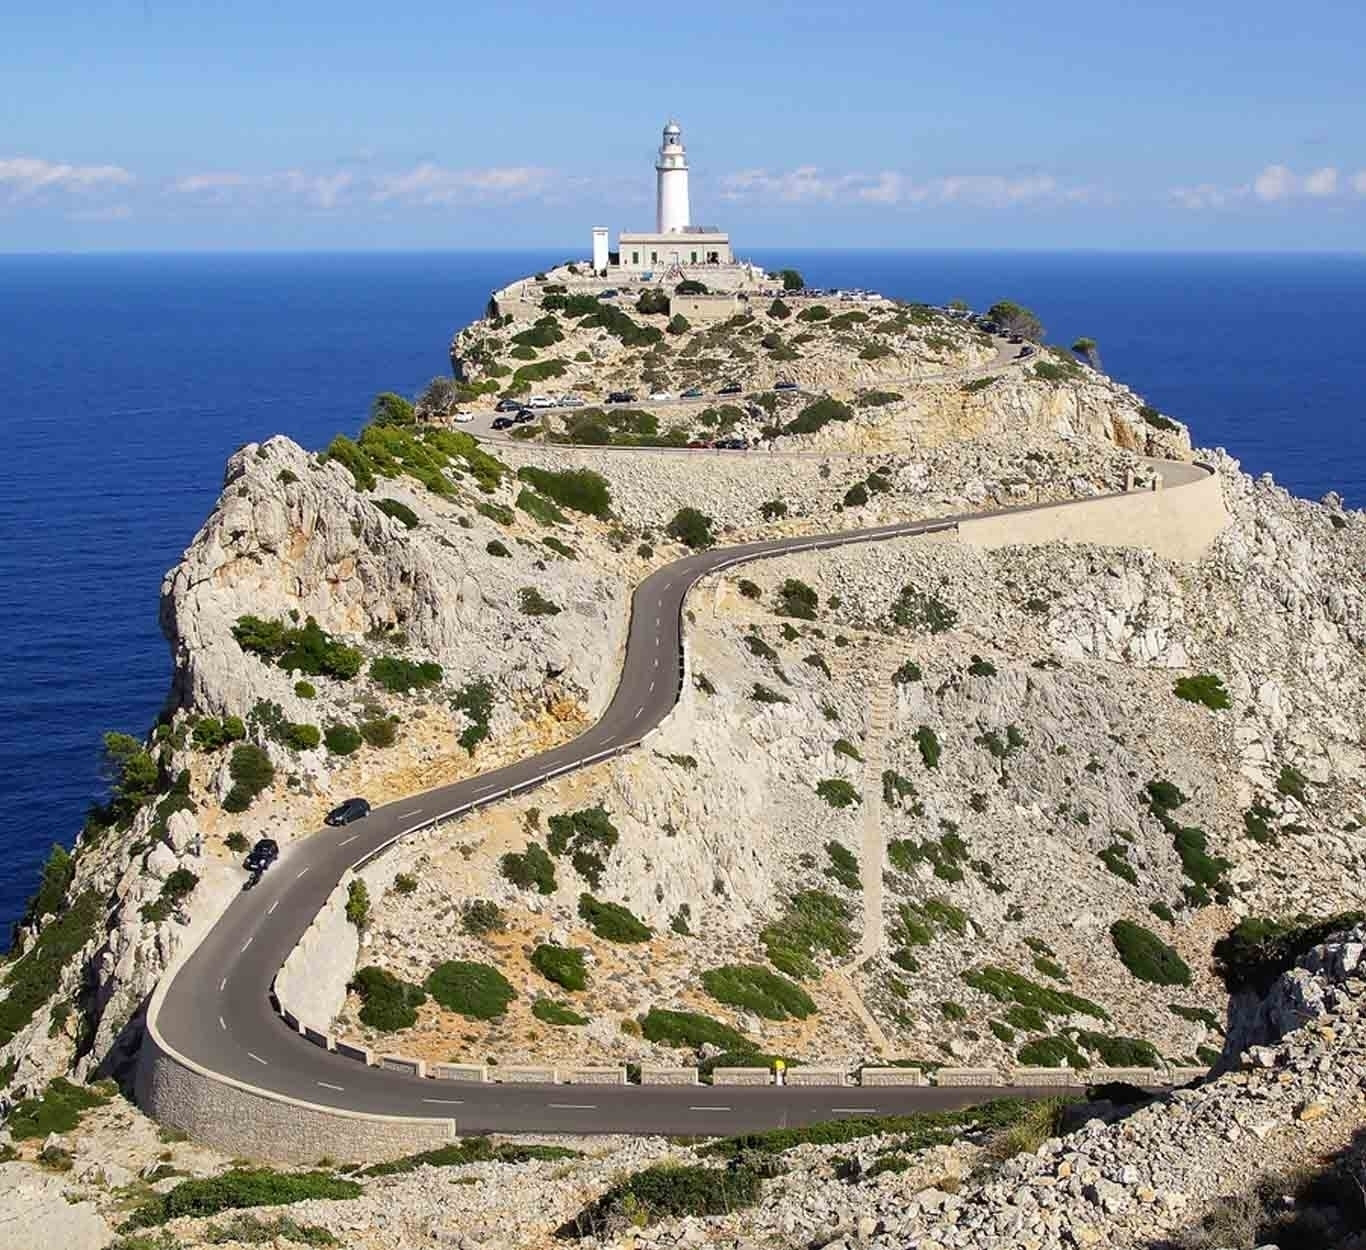 Radfahren auf Mallorca: steile Serpentinen mit dem Meer im Hintergrund.